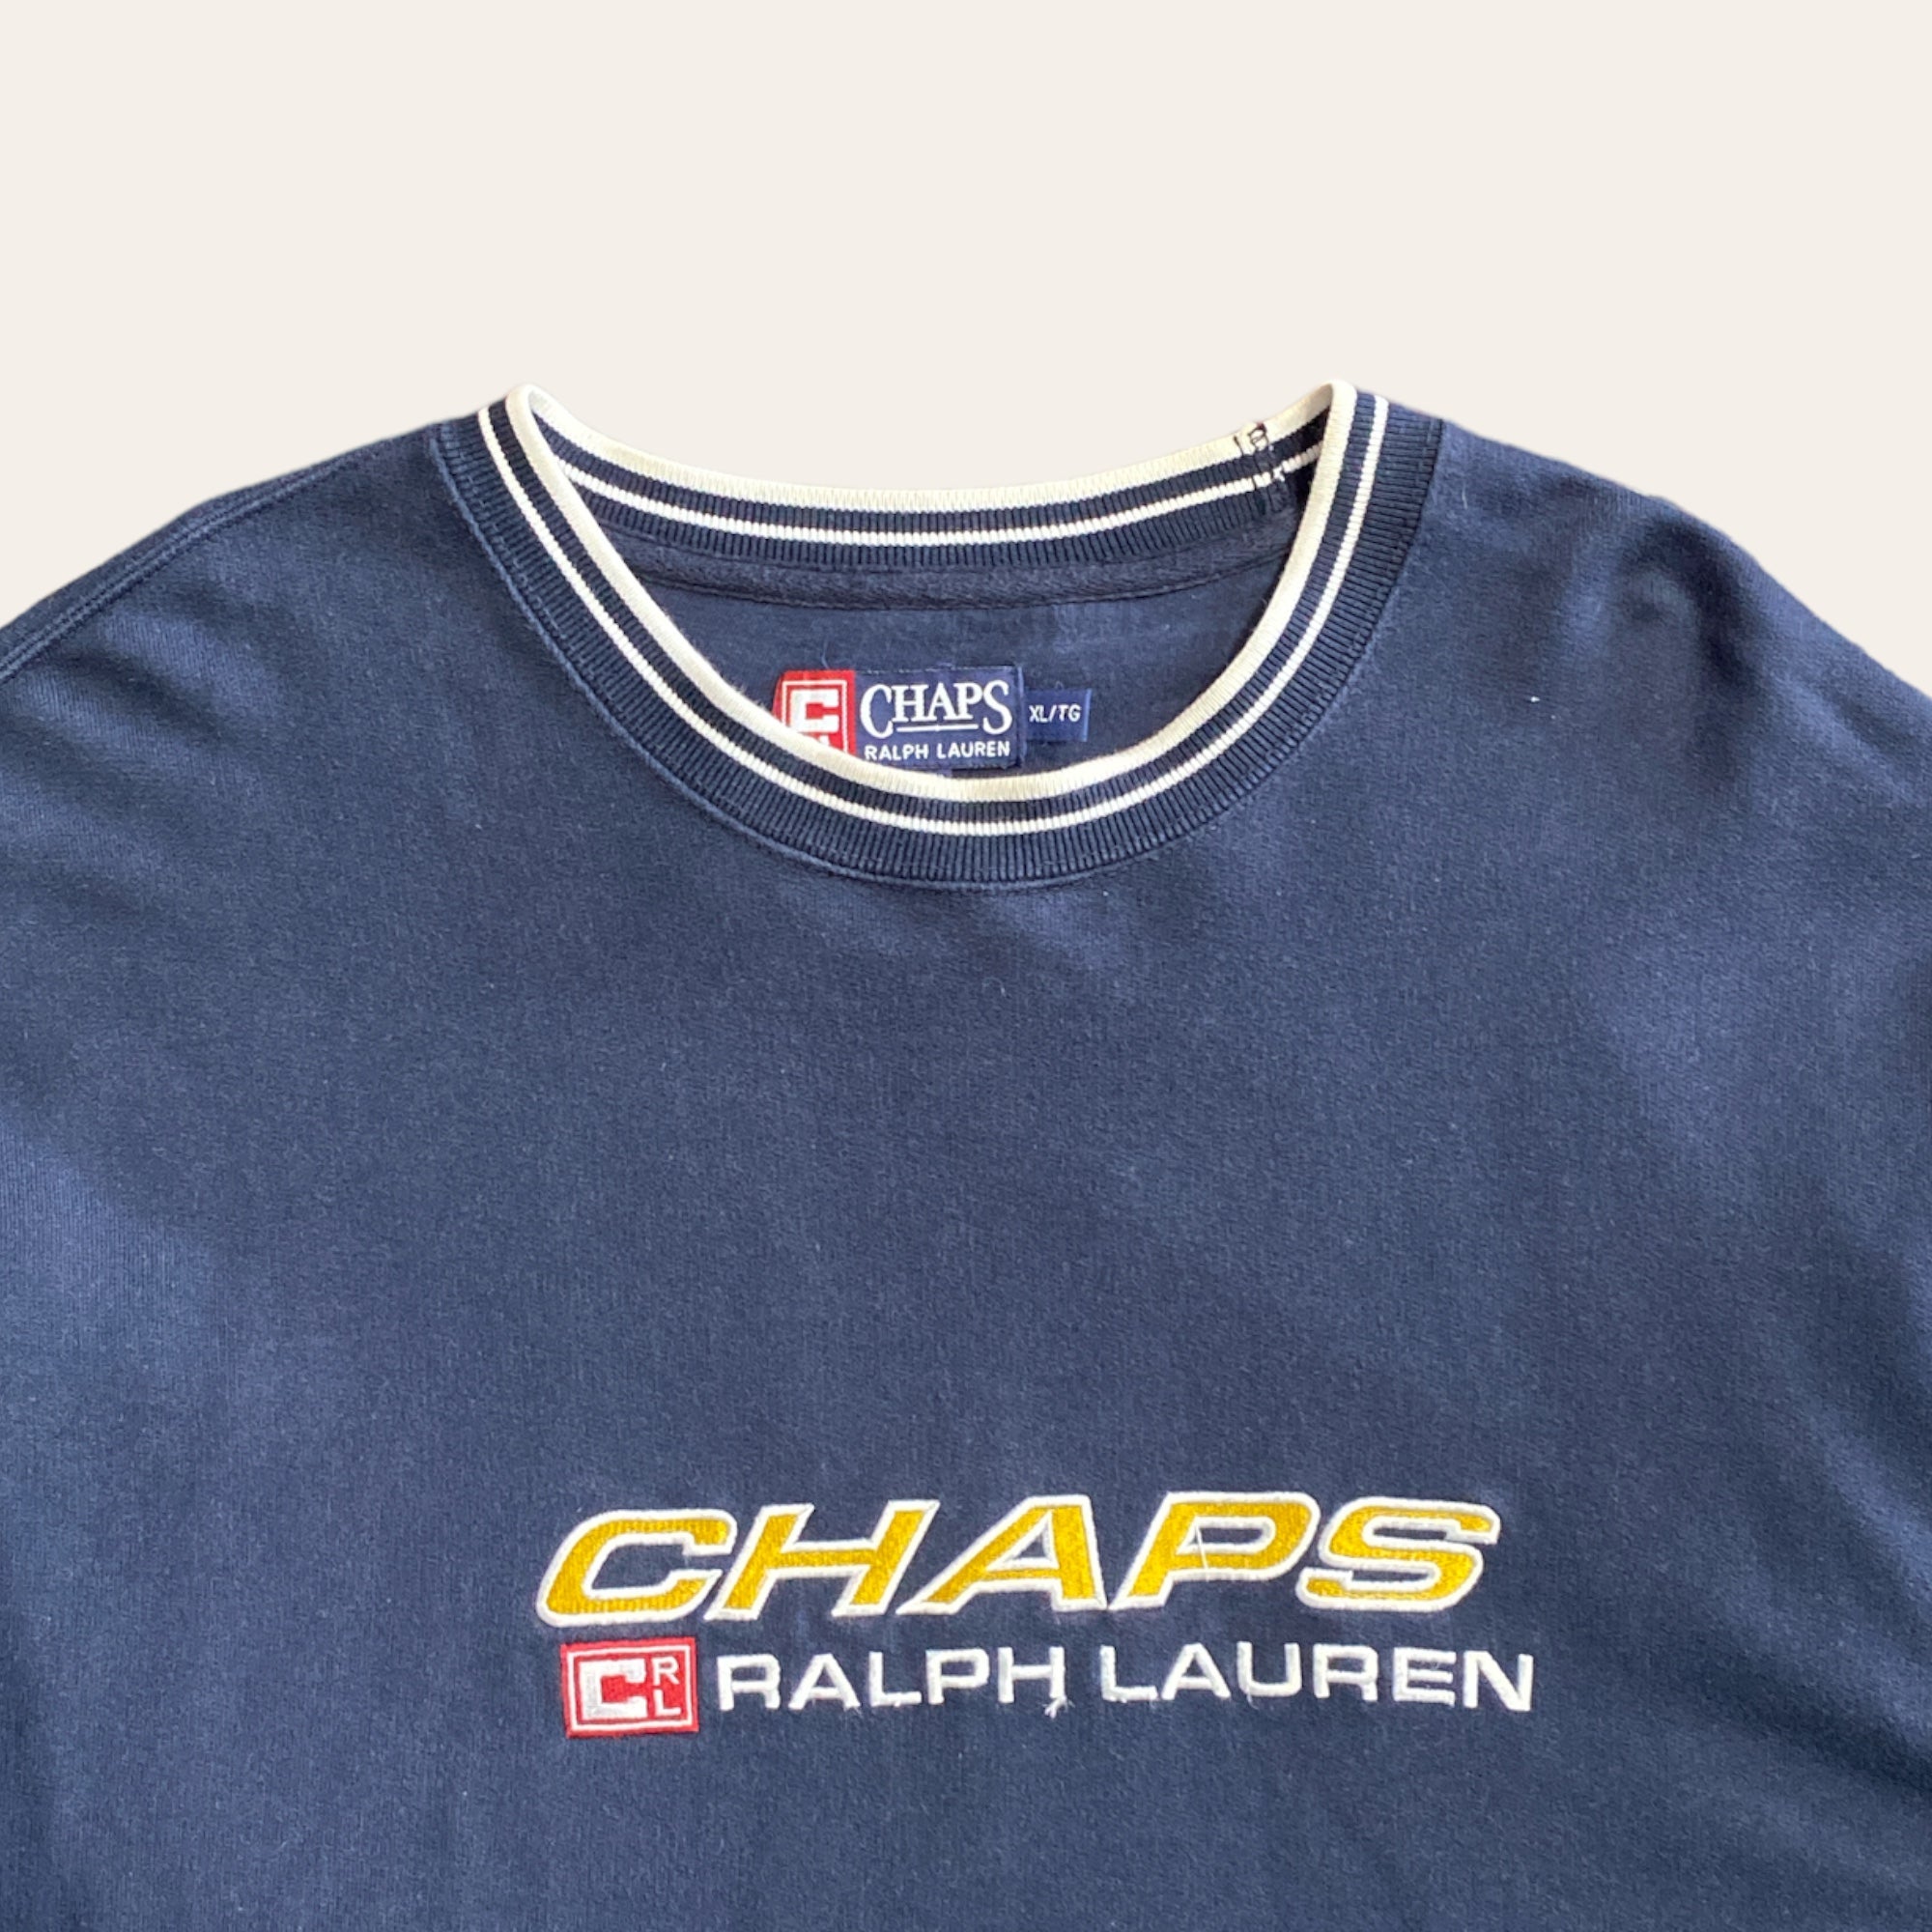 Vintage Chaps Ralph Lauren Sweater Size XL